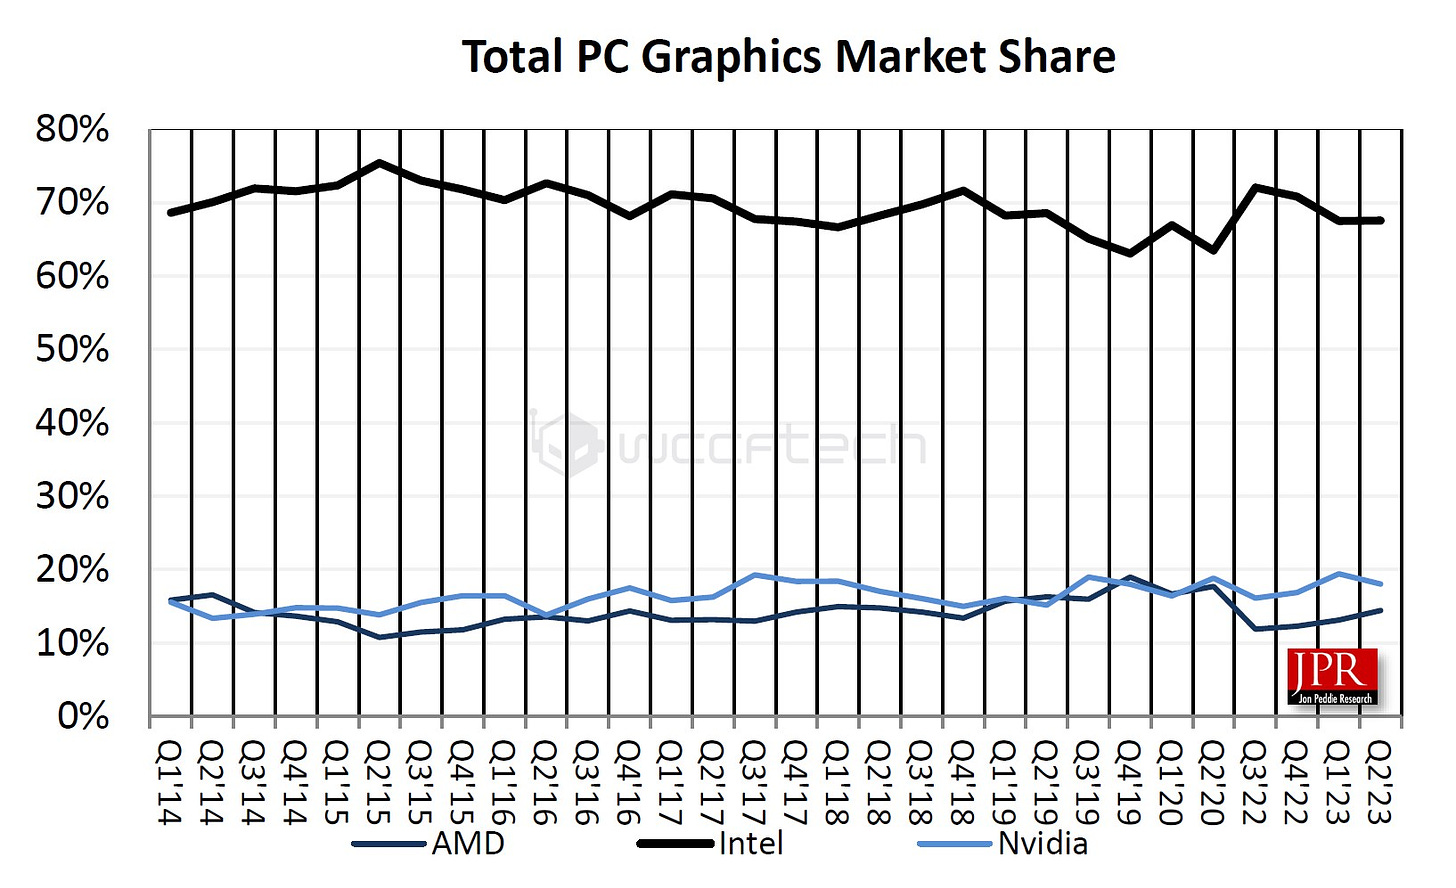 GPU Vendor Market Share Over Time (via JPR)